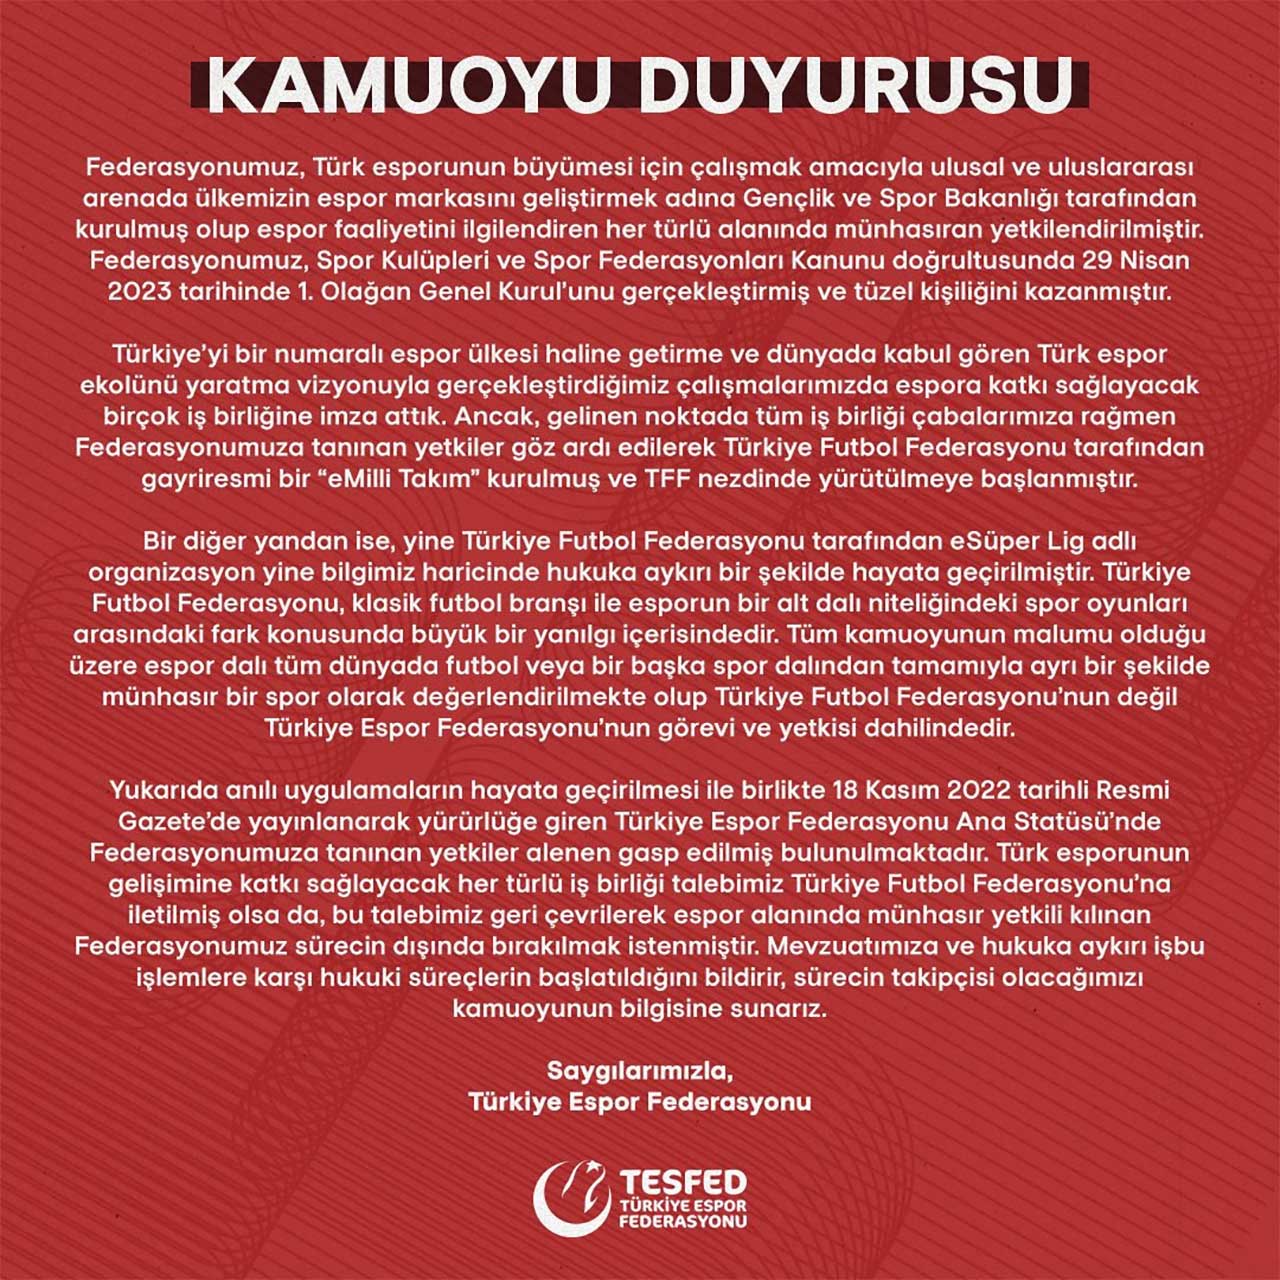 Meral Erden: Türkiye Espor Federasyonu, TFF'ye "eMilli Takım" ve "eSüper Lig" İçin Dava Açtı 57